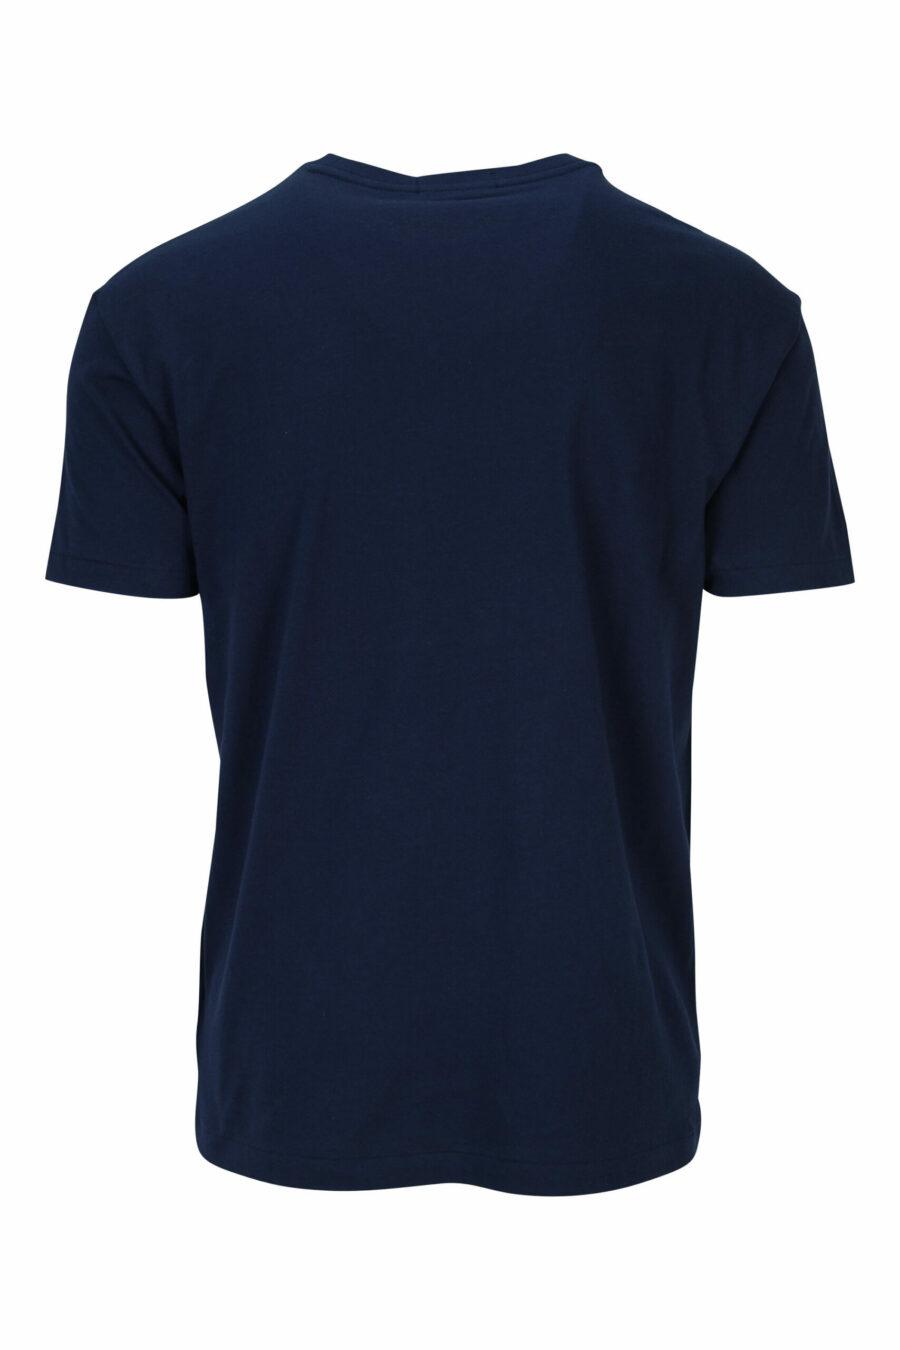 Dunkelblaues T-Shirt mit weißem "Polo"-Maxilogo - 3616535909311 1 skaliert